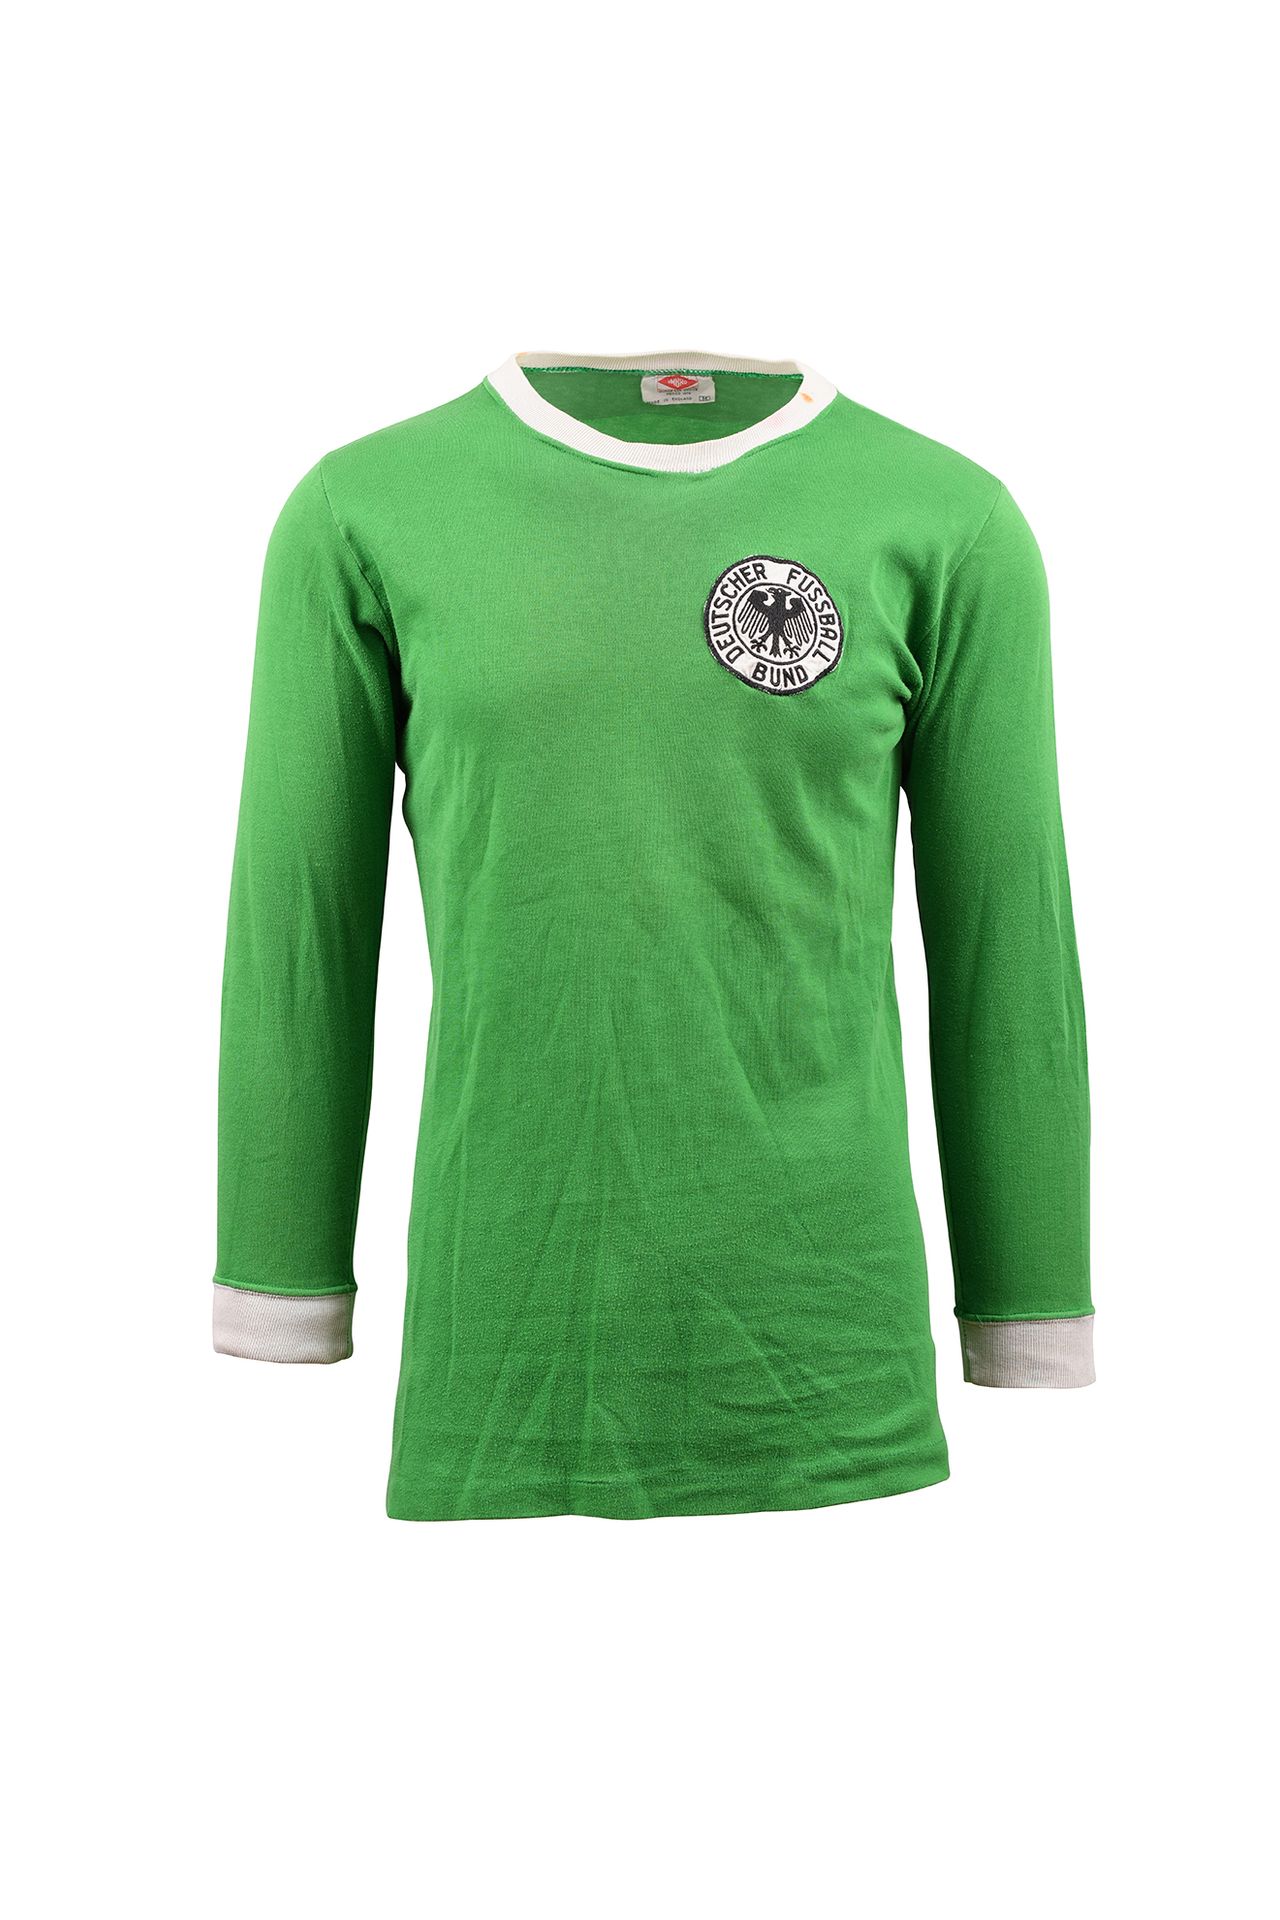 Null Equipo juvenil alemán. Camiseta N°12 llevada contra el equipo juvenil franc&hellip;